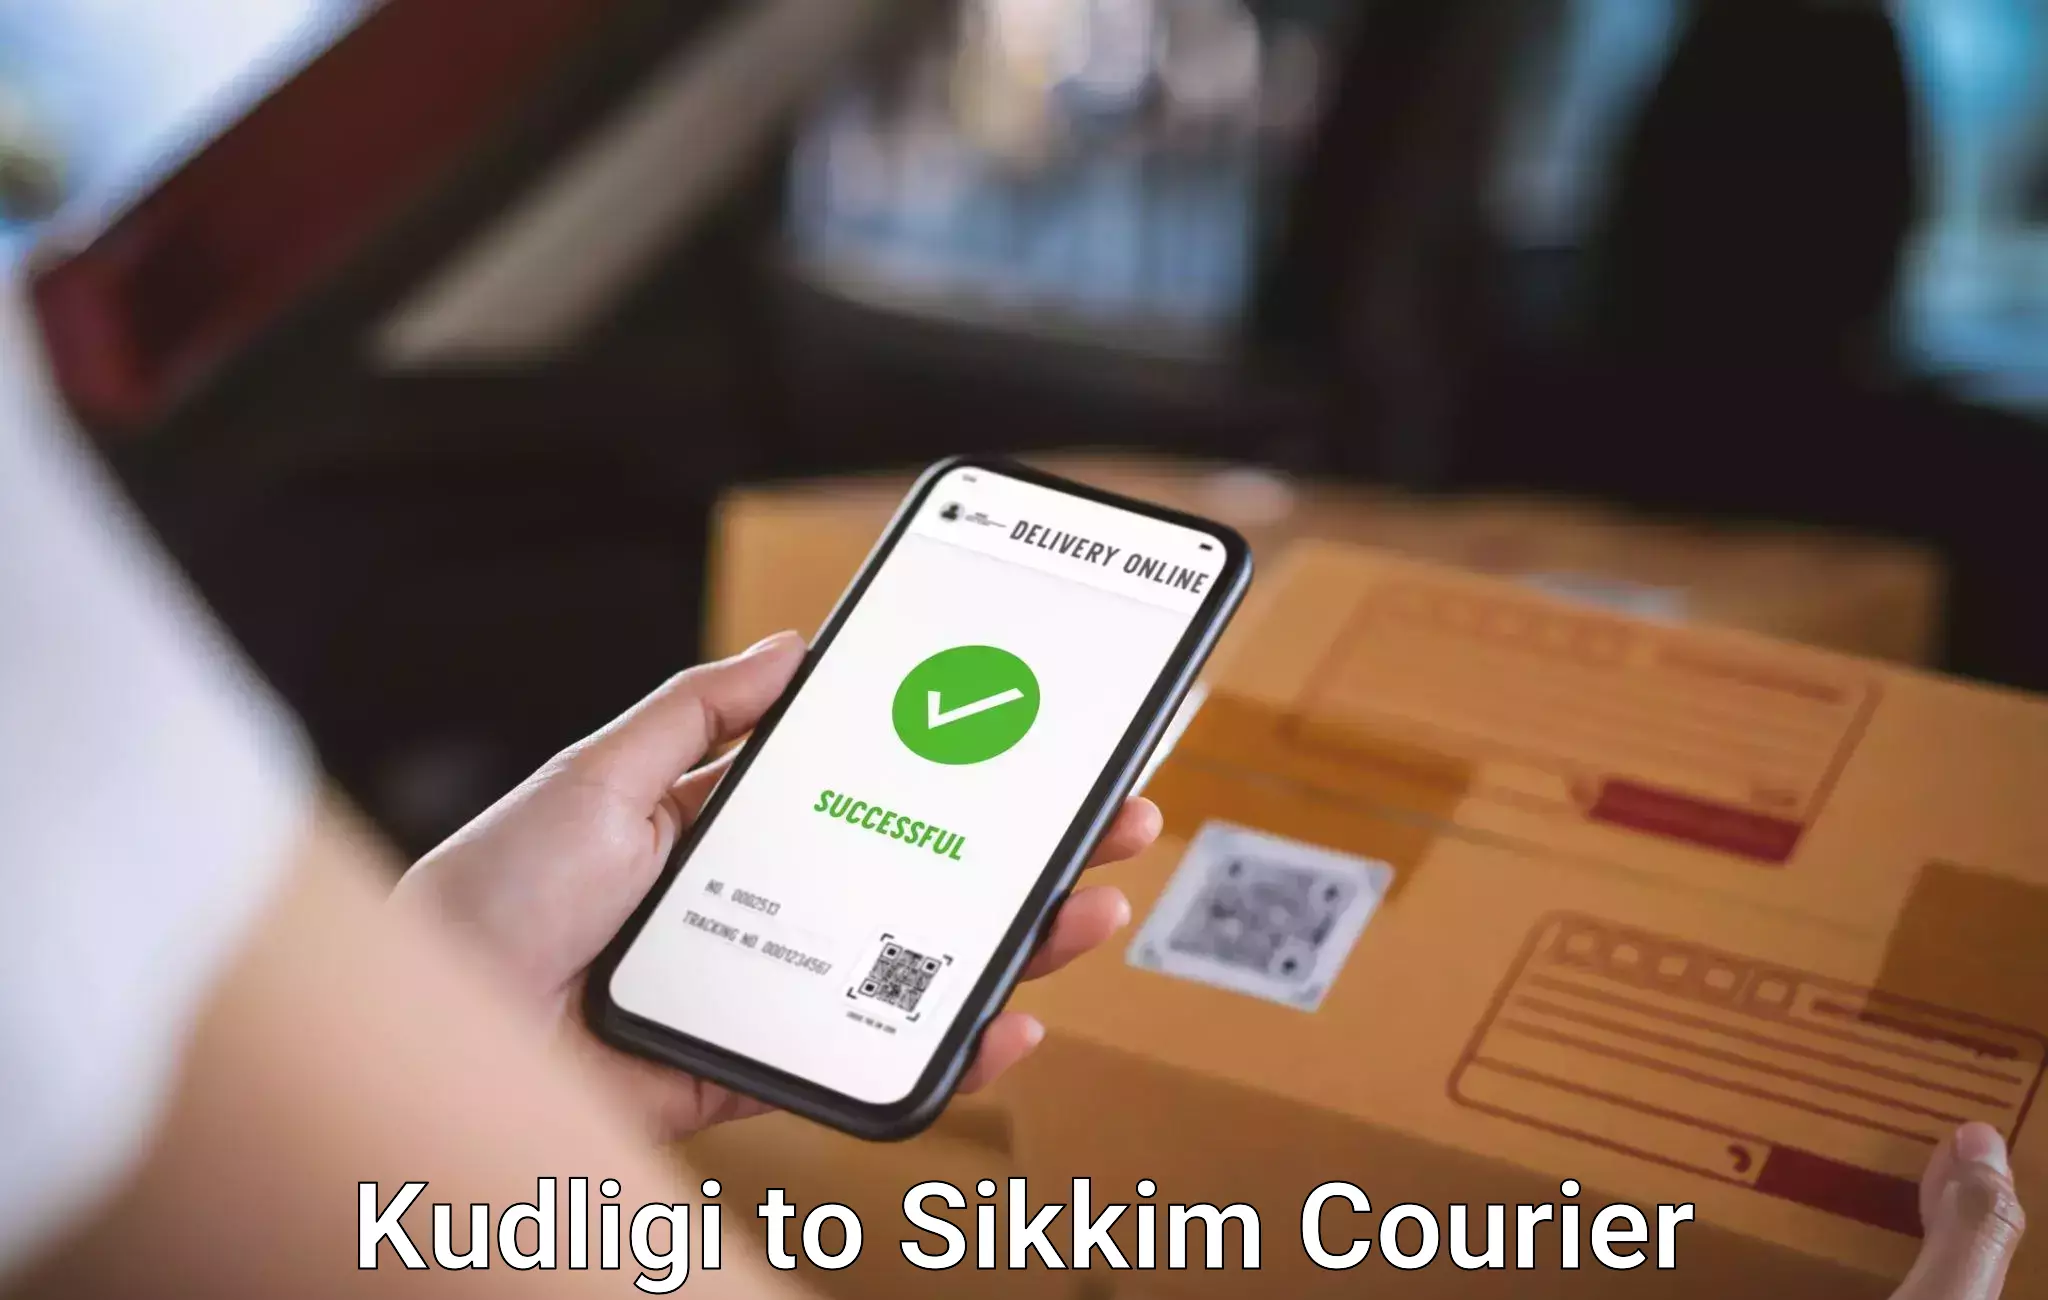 Luggage delivery estimate Kudligi to Singtam